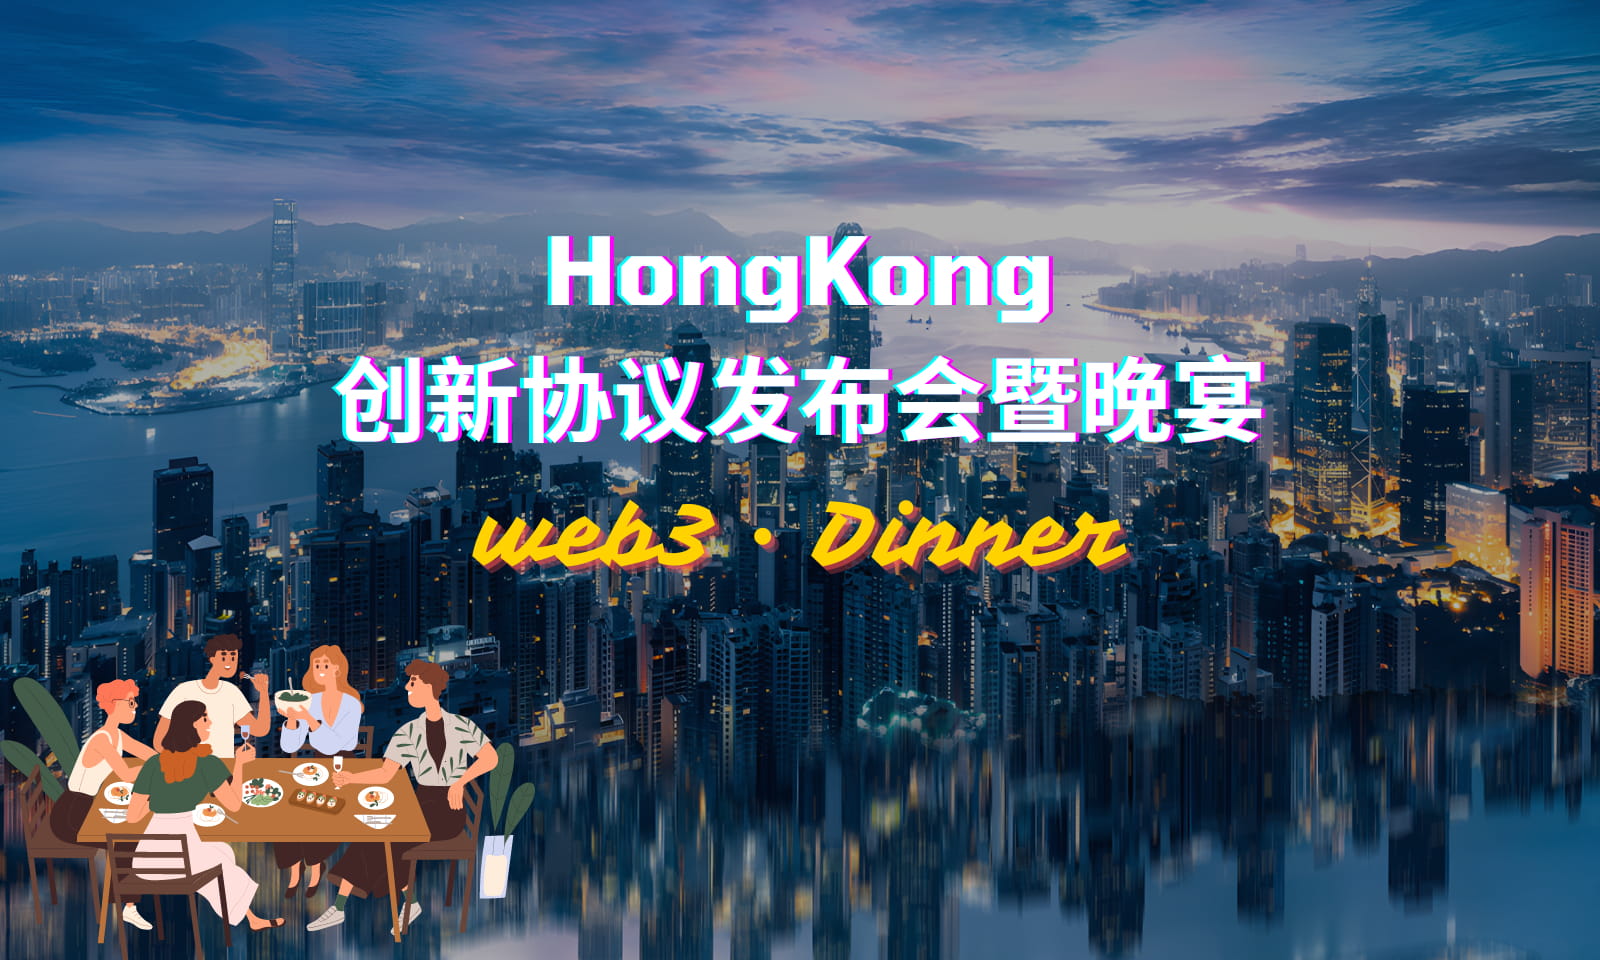 HongKong创新协议发布会暨晚宴